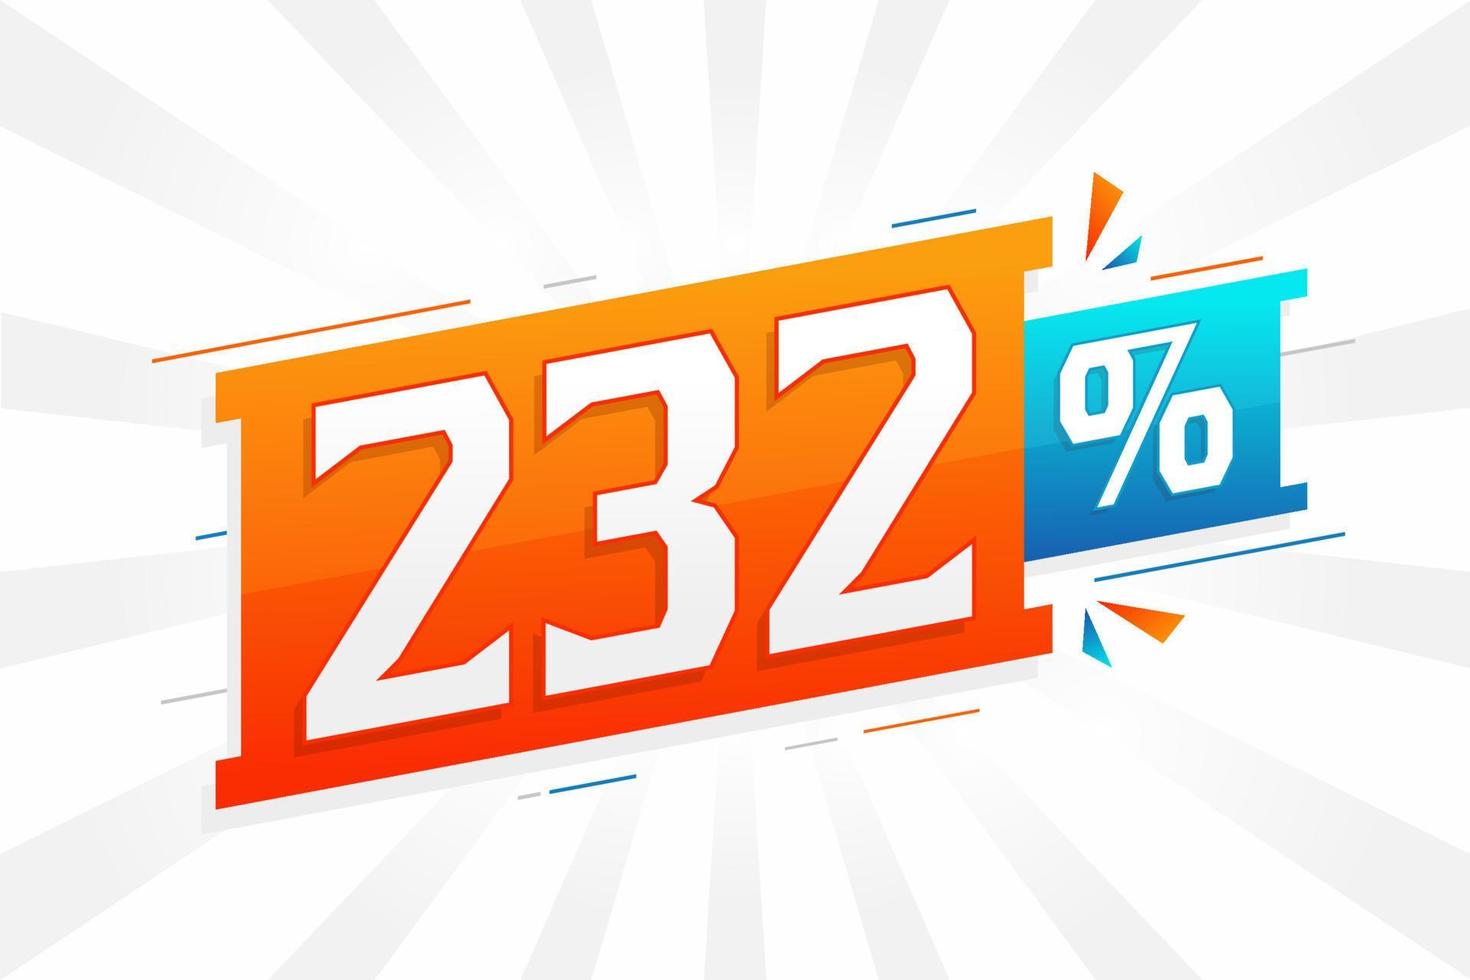 232 promotion de bannières marketing à prix réduits. Conception promotionnelle de 232 % des ventes. vecteur